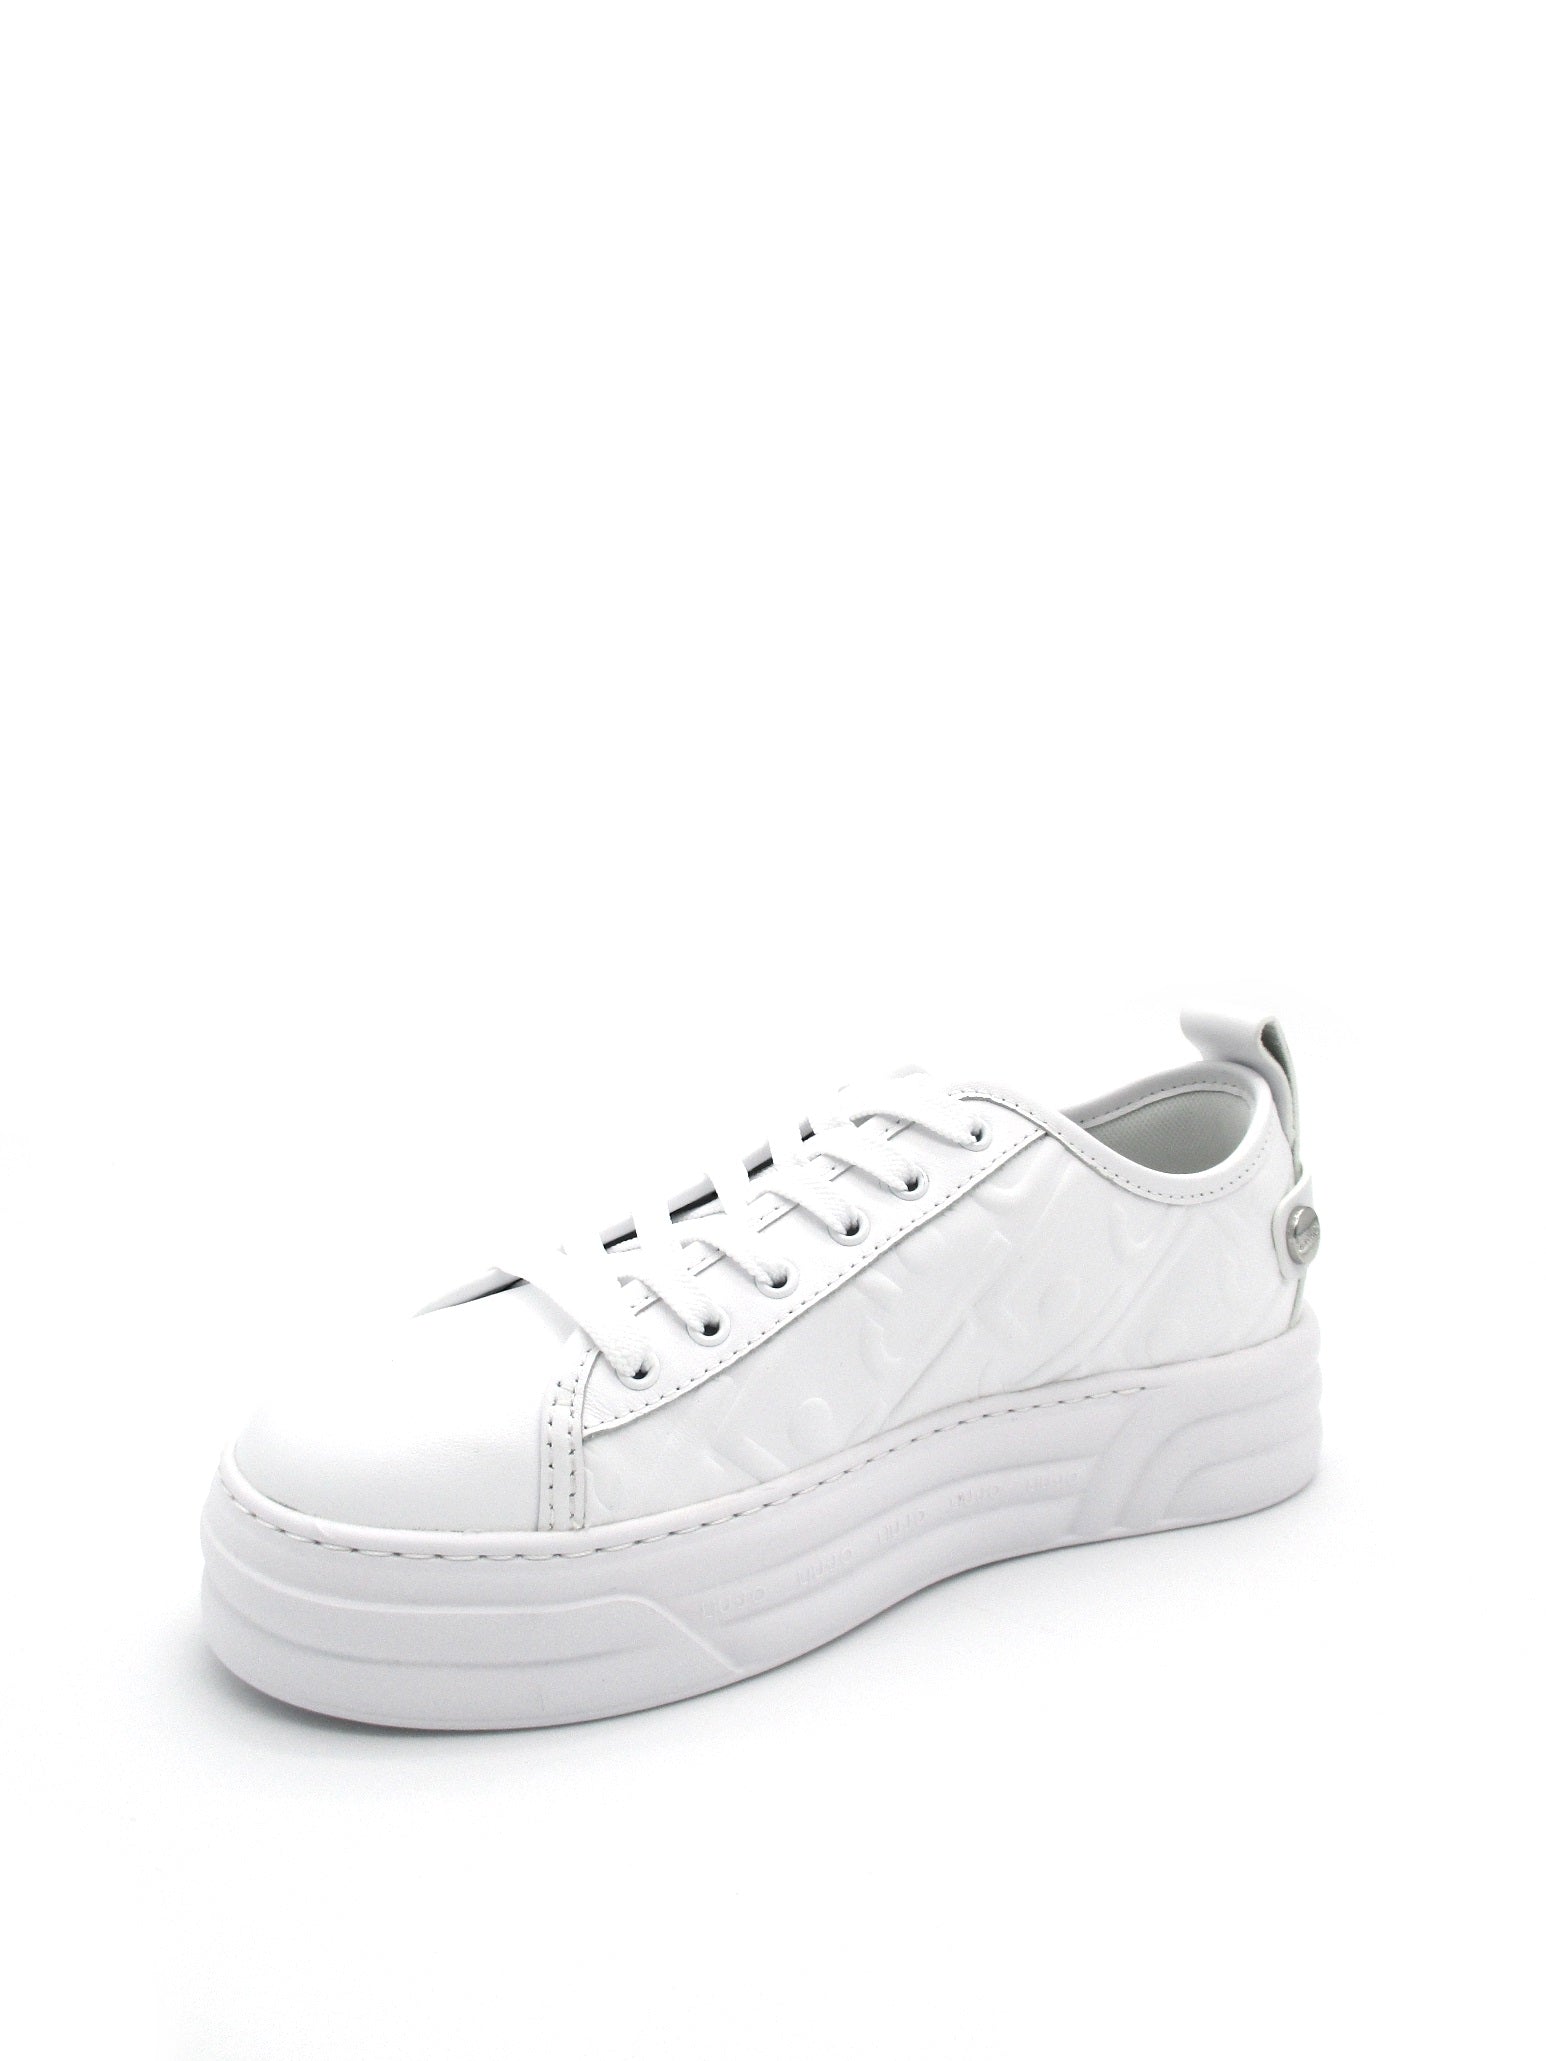 Sneaker pelle LIU JO Cleo 01 White